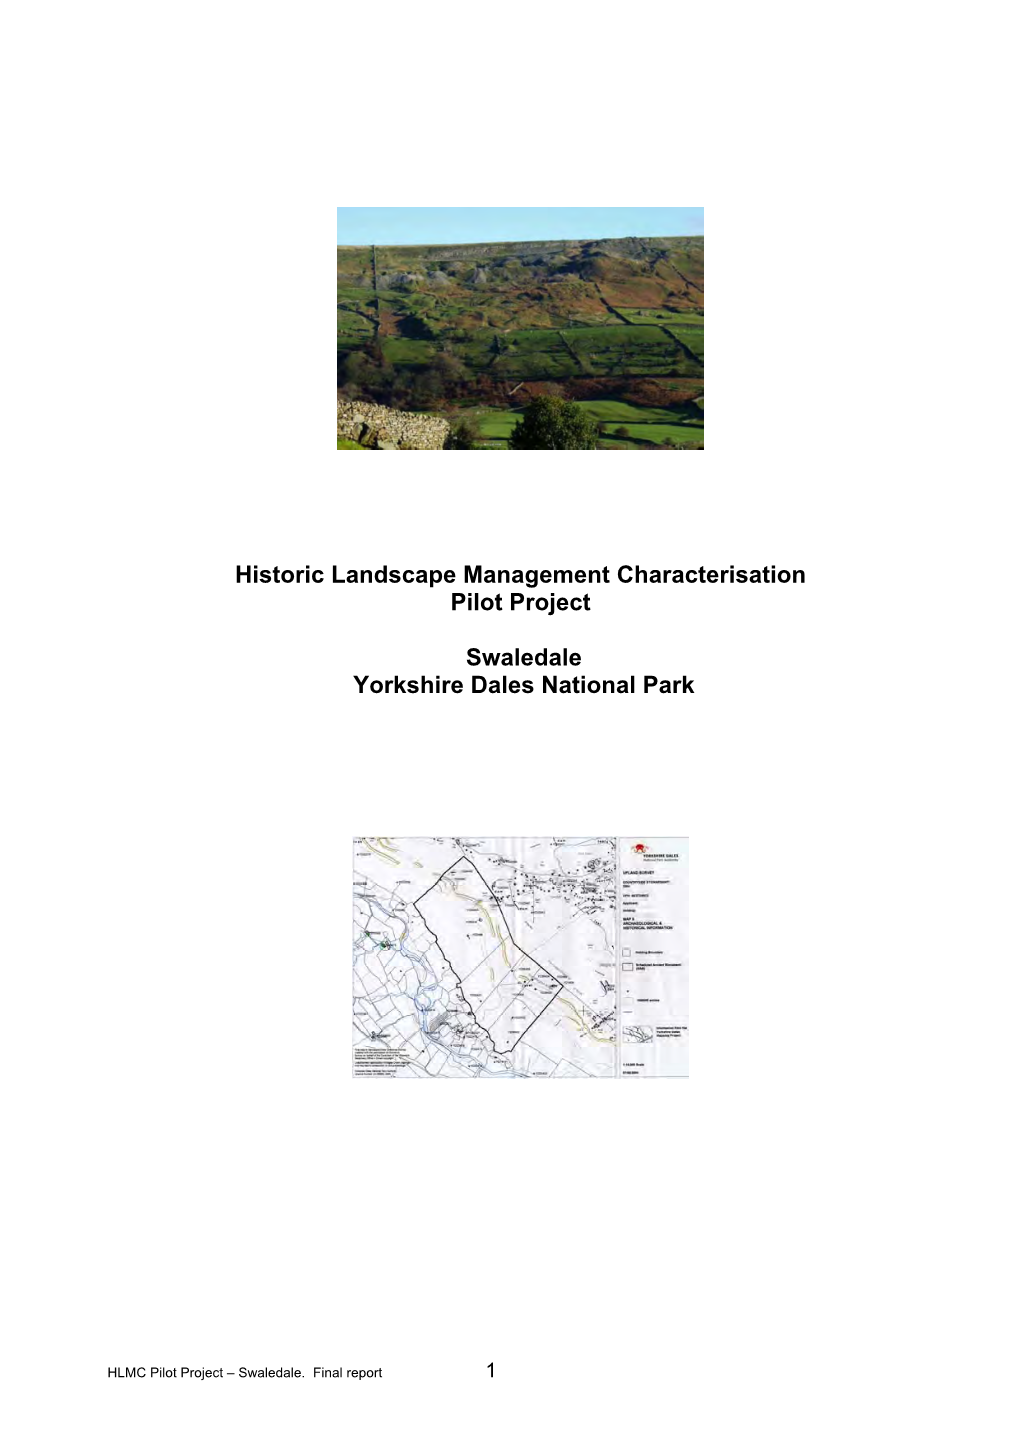 Historic Landscape Management Characterisation (5Mb PDF)